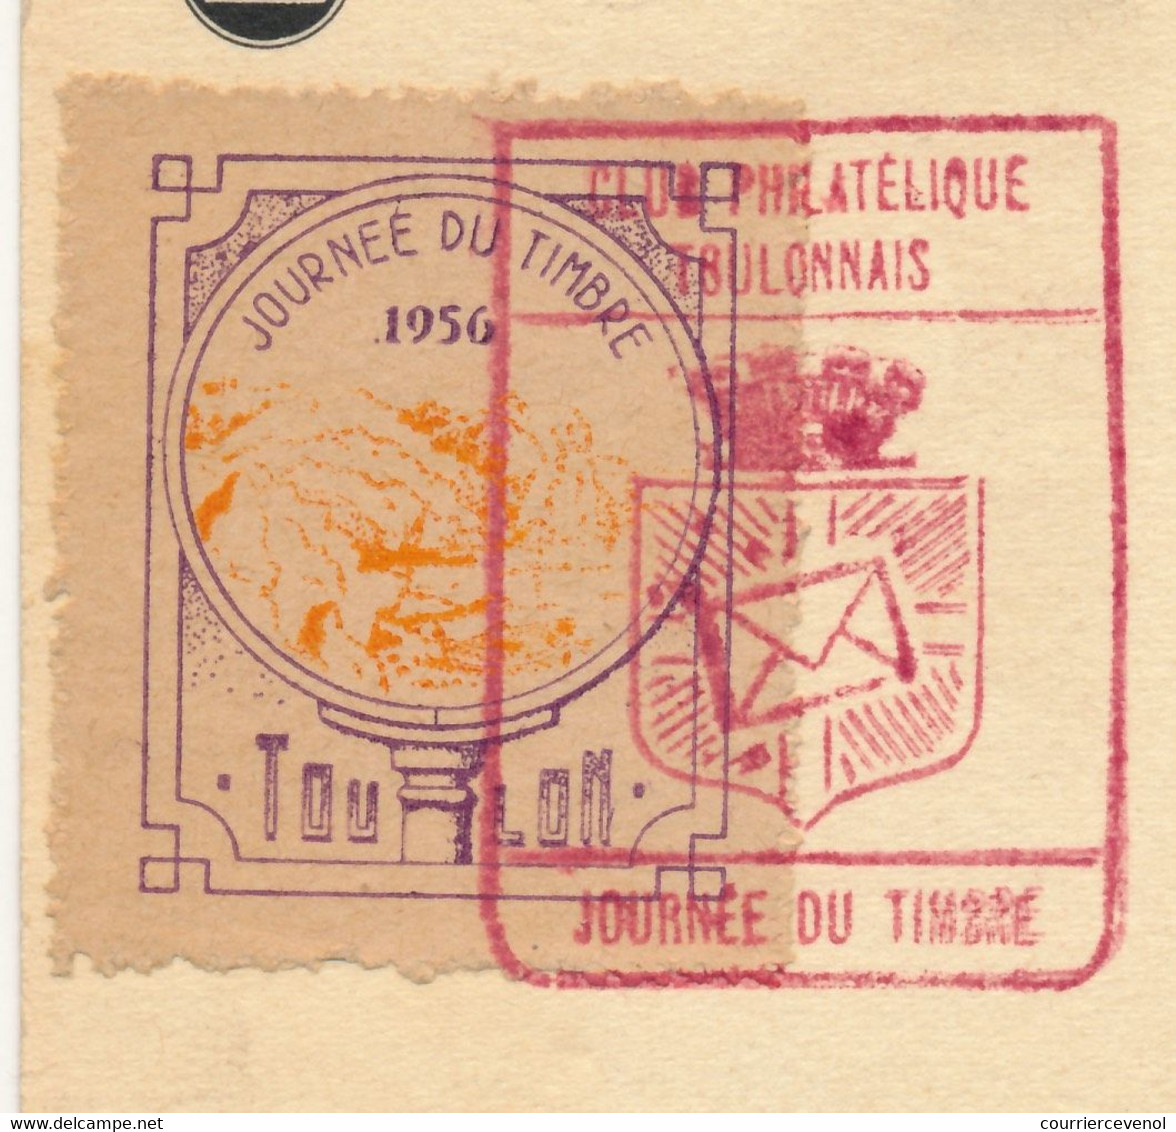 FRANCE => Vignette "Journée Du Timbre 1956 TOULON" Sur Carte Fédérale 12F + 3F François De Tassis - Toulon 1956 - Esposizioni Filateliche